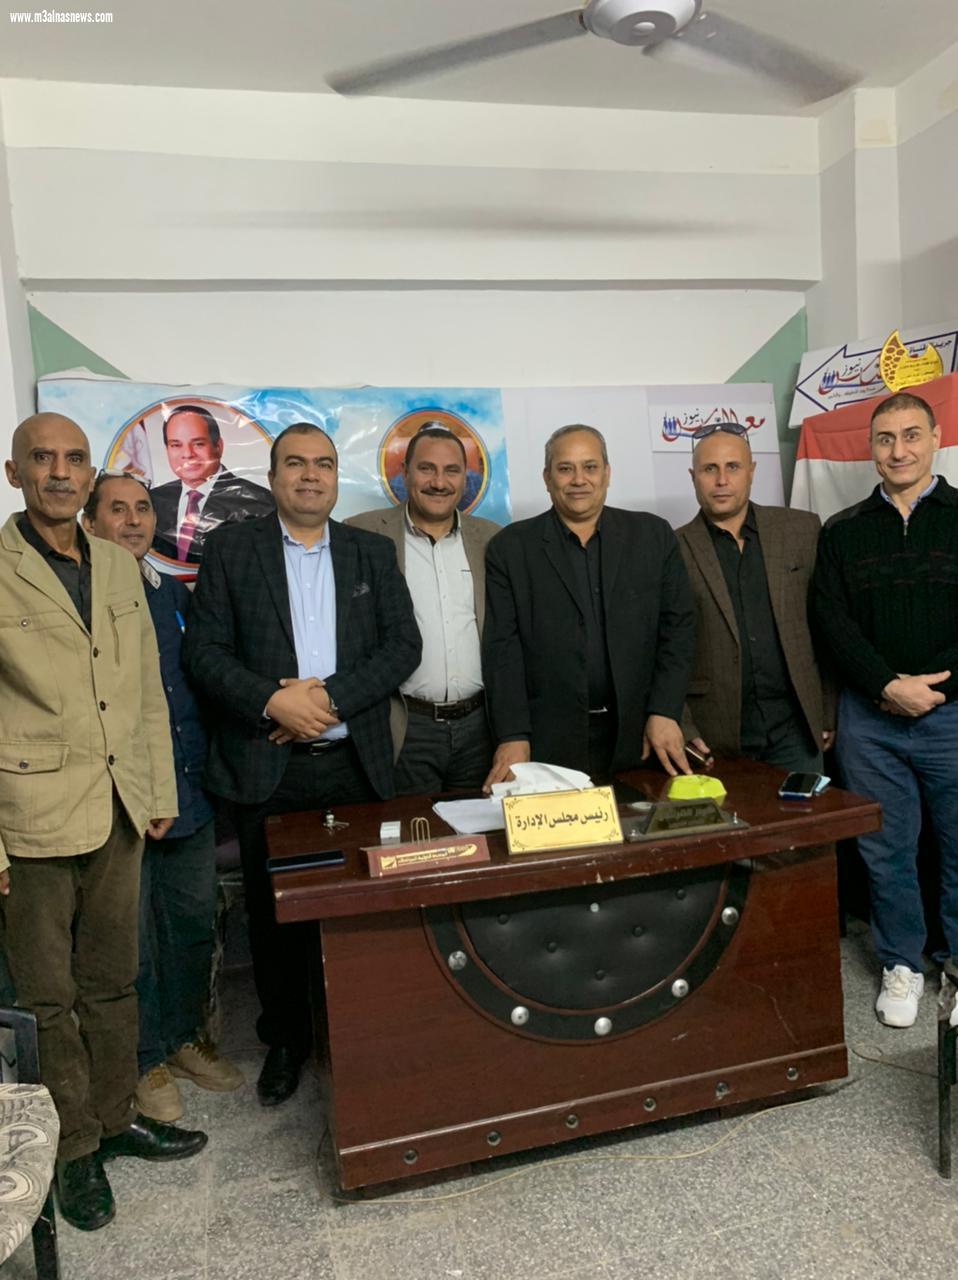 مجلس إدارة مع الناس يوافق على فتح مكتب للجريدة بمحافظة الغربية بقيادة المستشار عماد شلبى